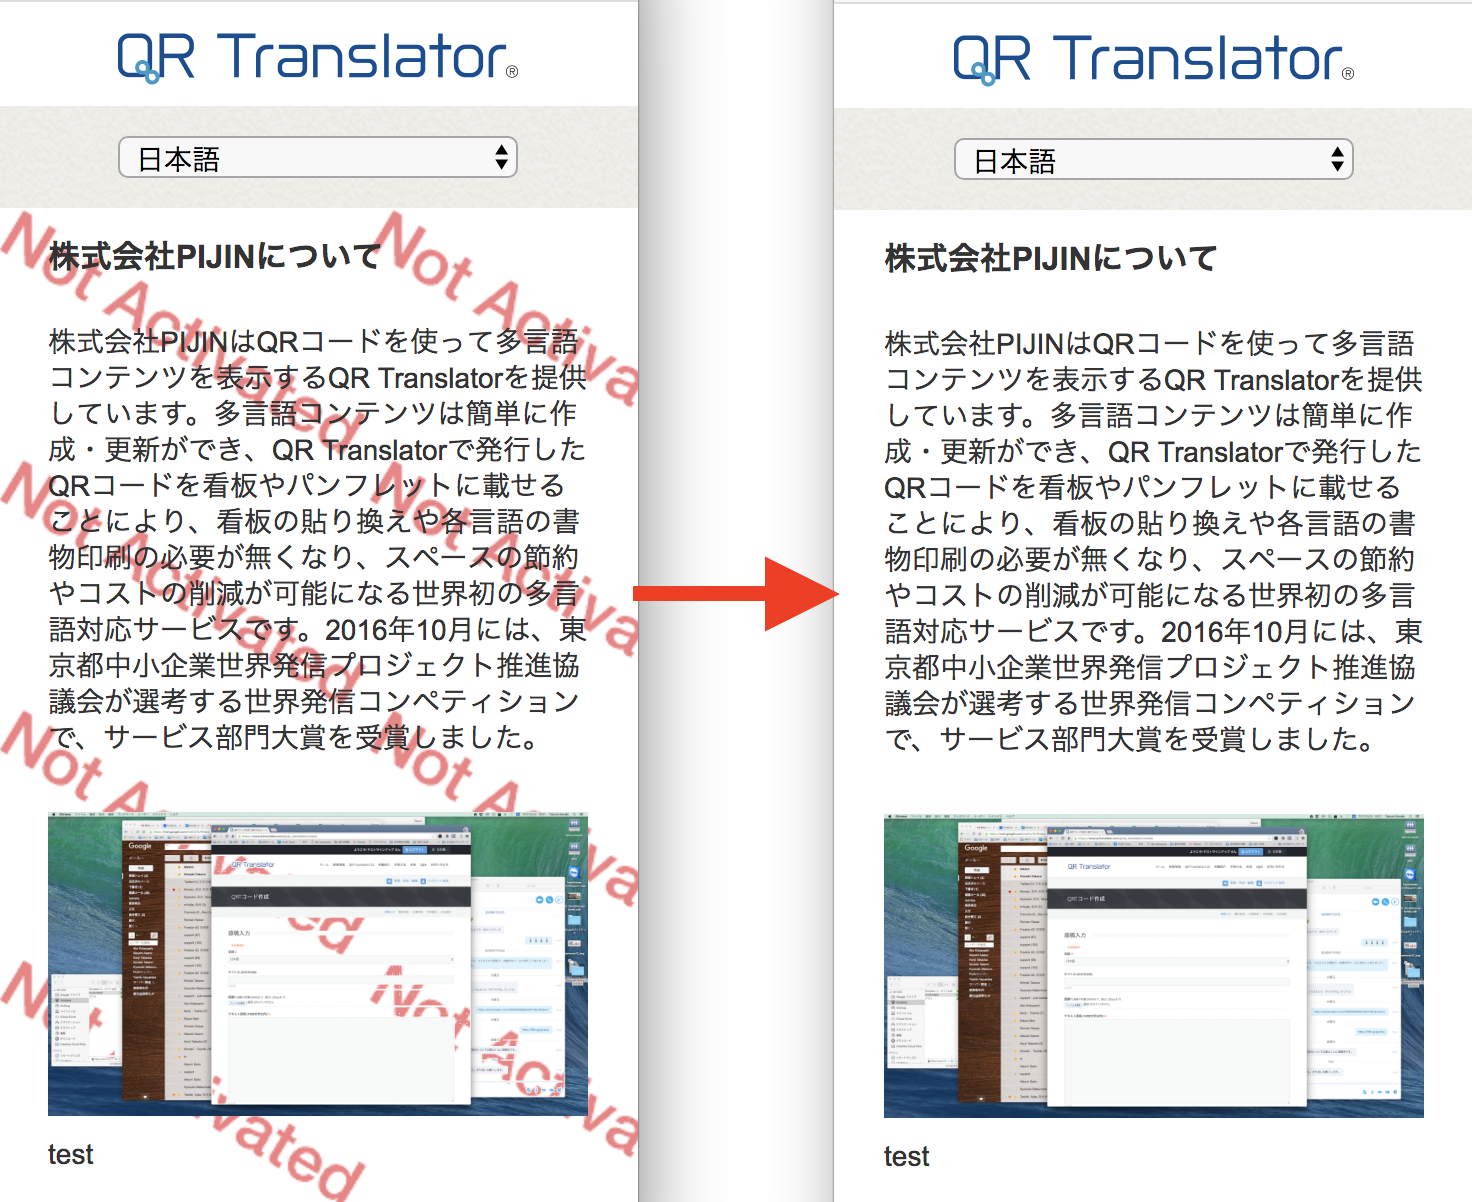 トライアル 無料お試し からアクティベート 実際に課金して利用 する方法 Qr Translator